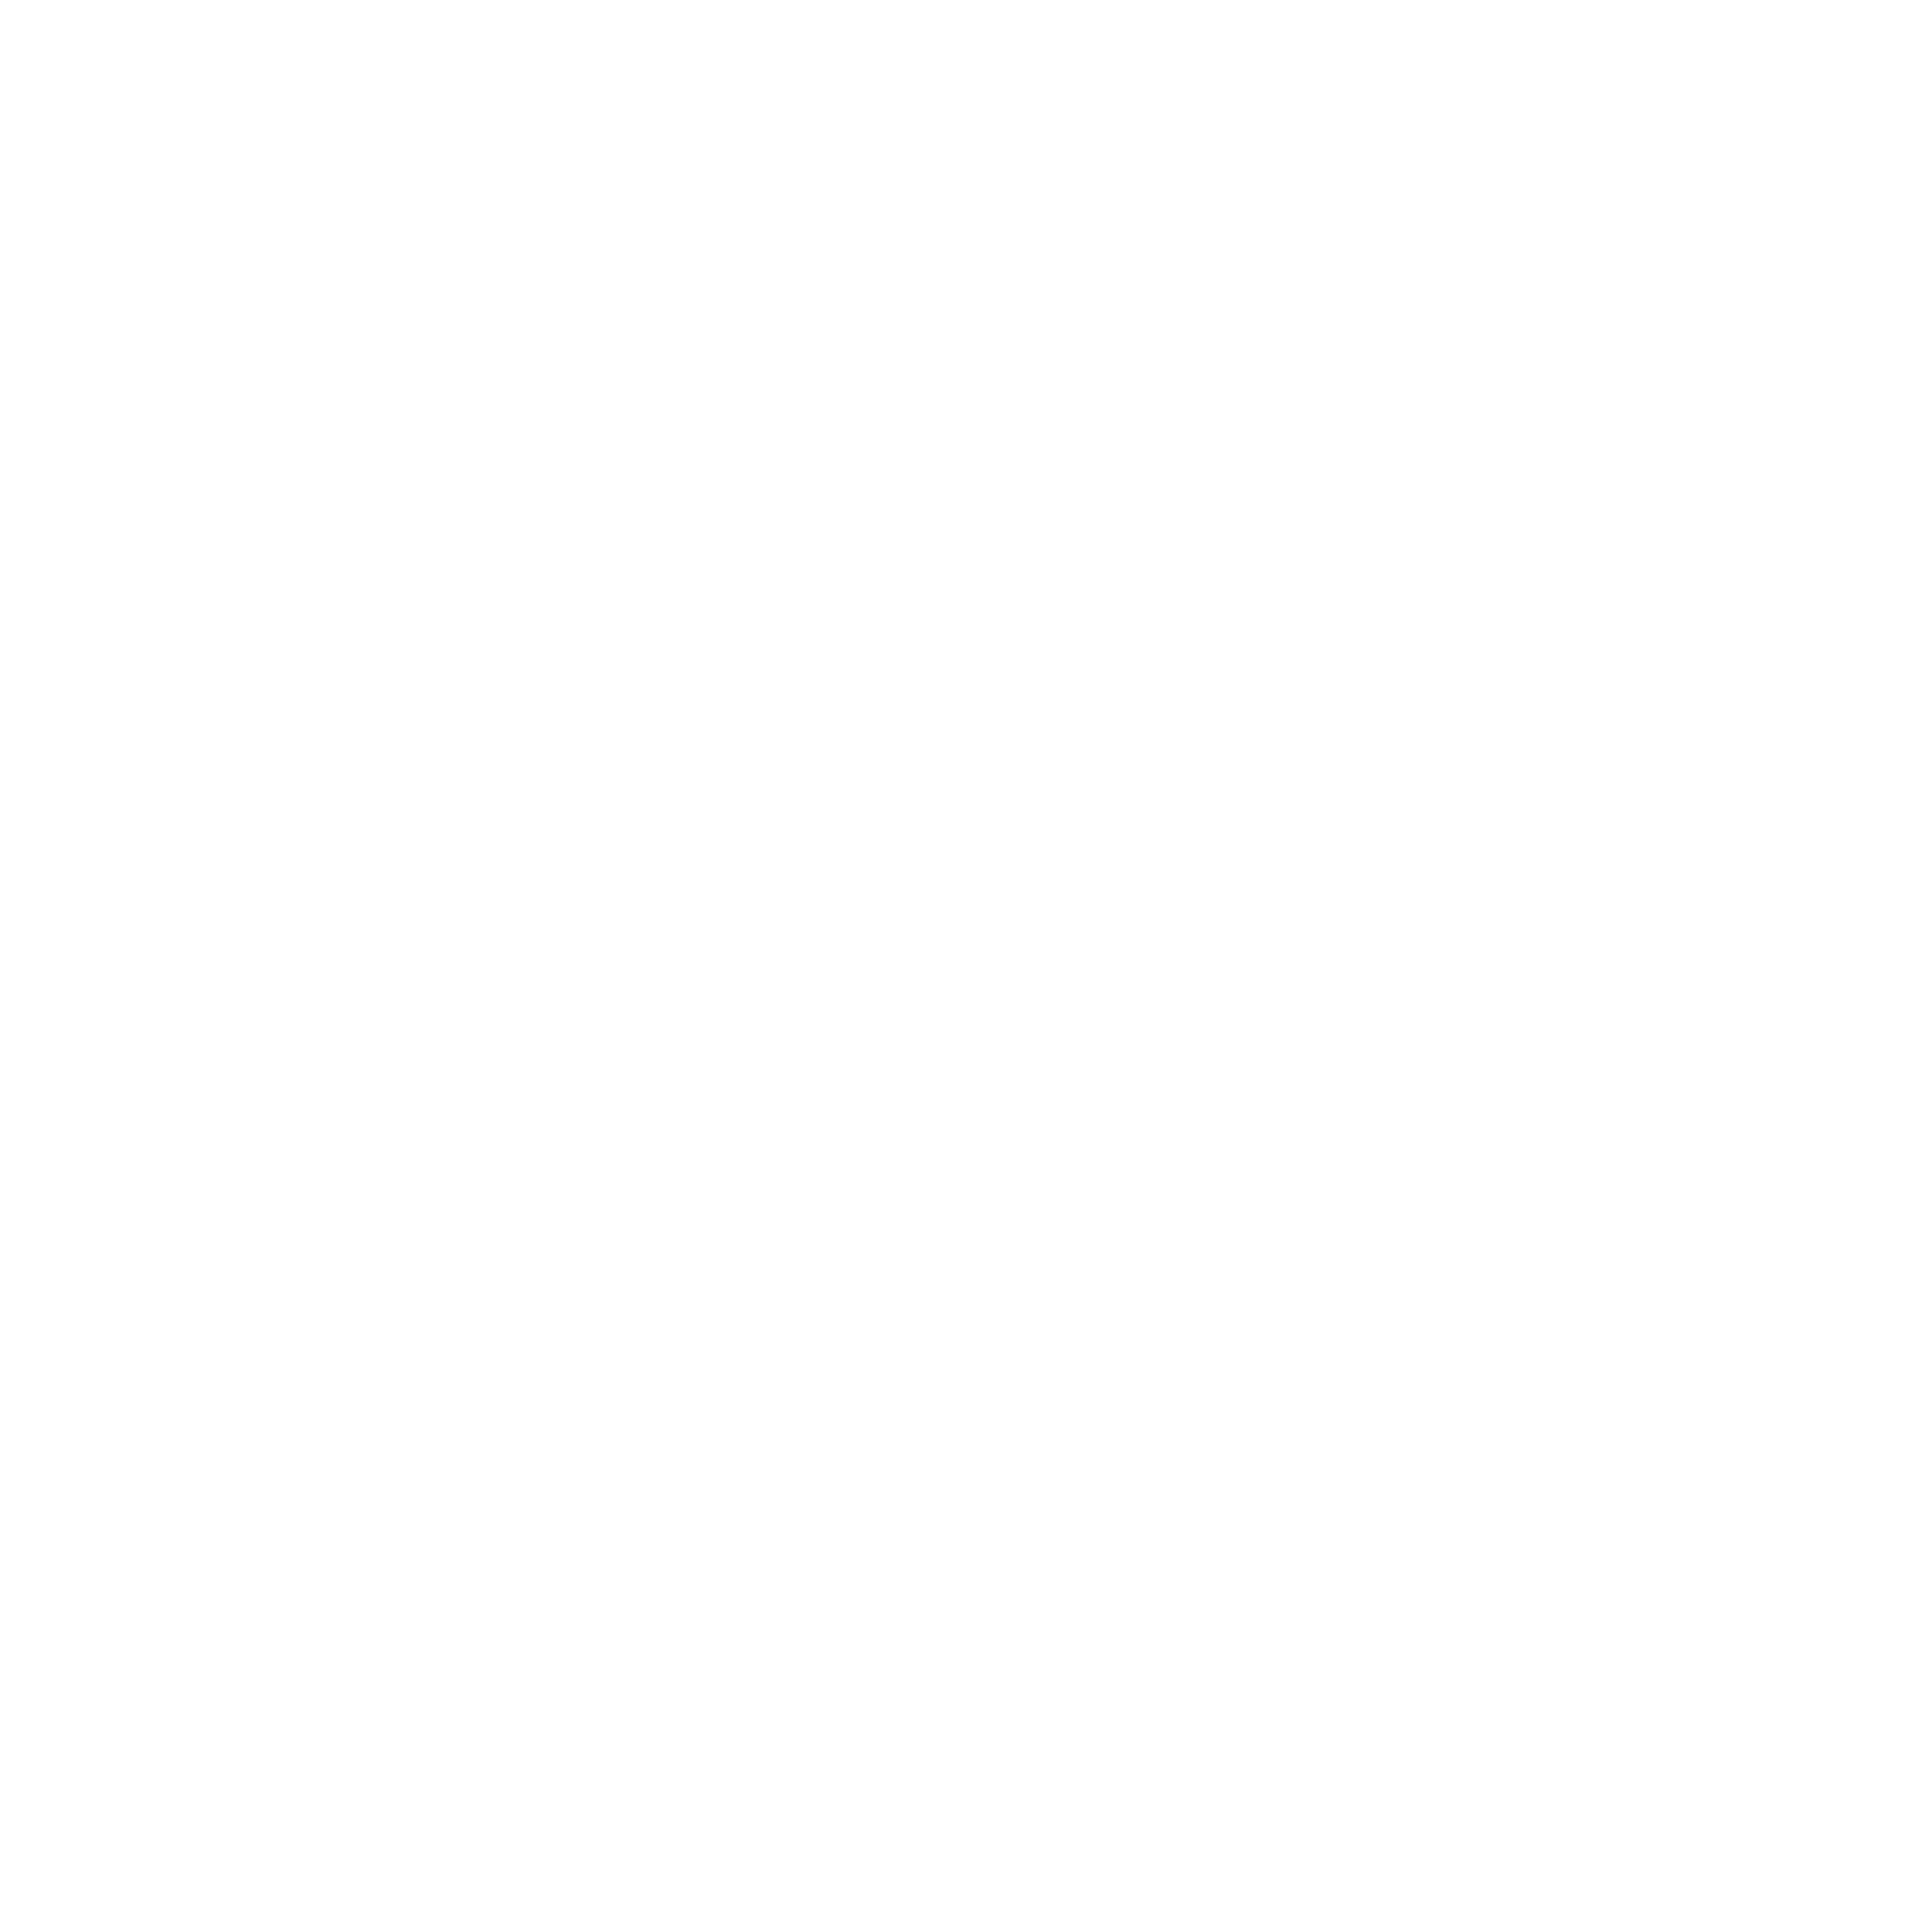 Thiruvananthapuram Airport Logo Transparent Picture